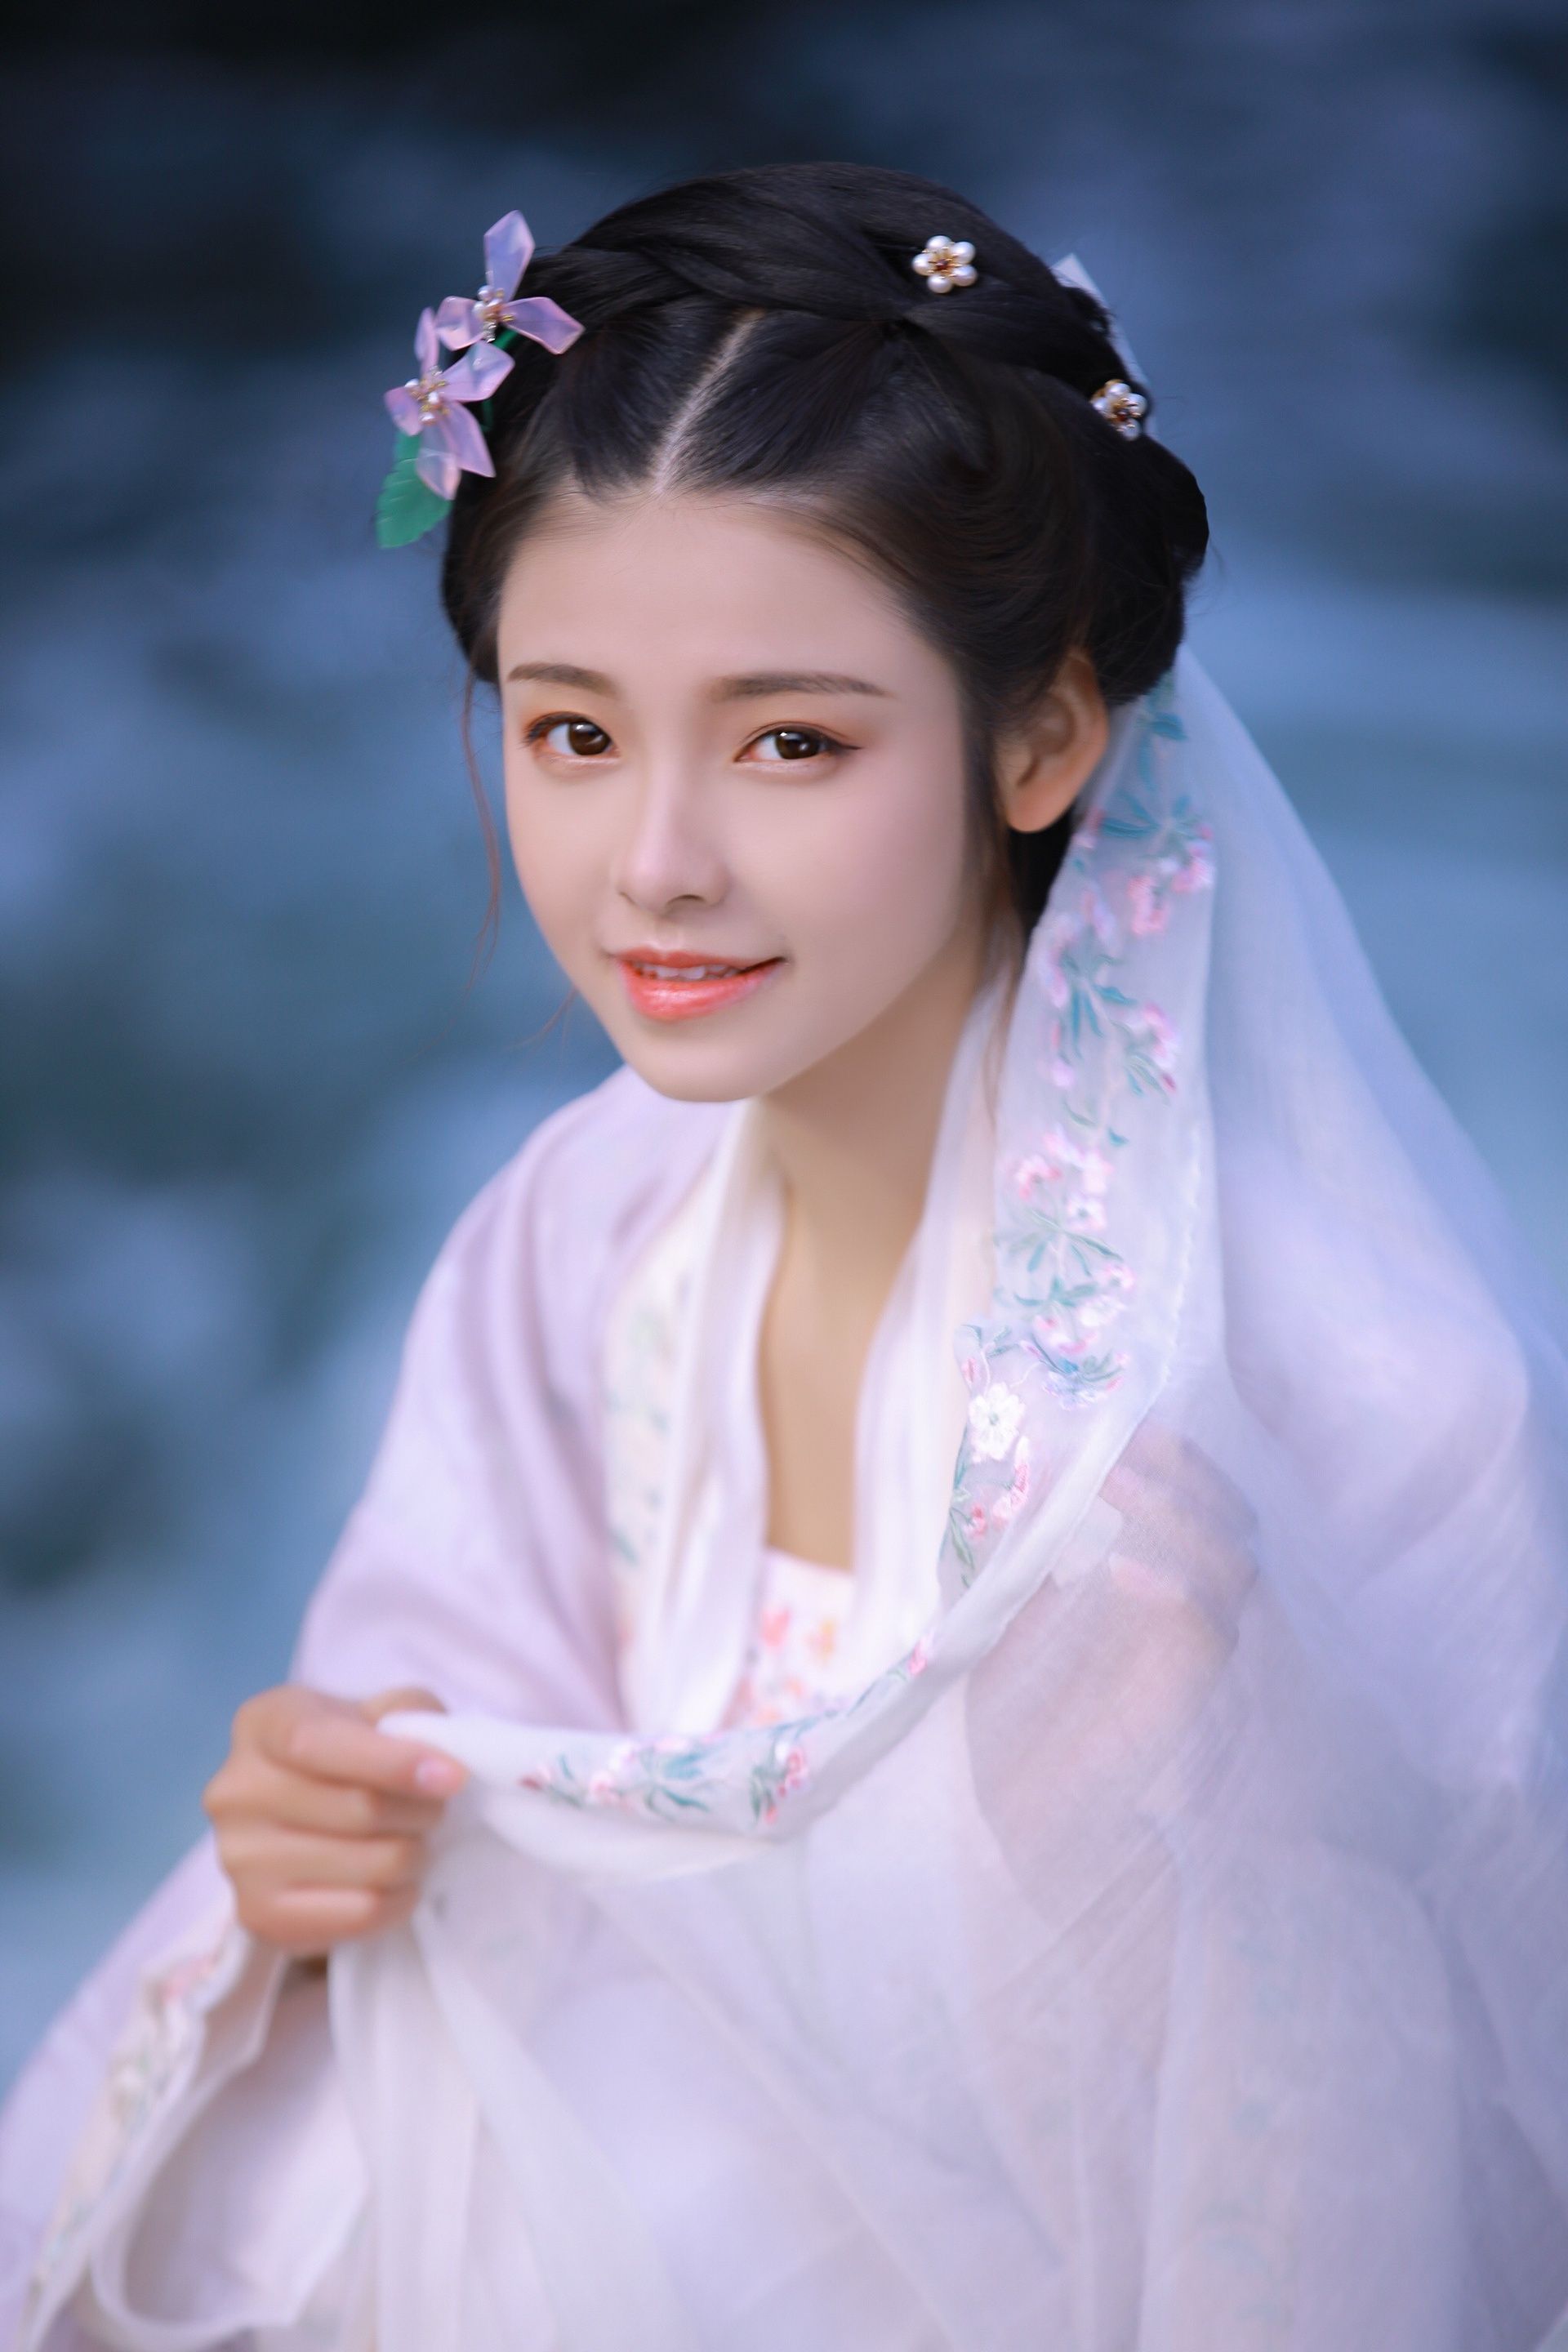 Một cô gái với trang phục cổ trang là một thước phim đẹp mắt để nắm bắt vẻ đẹp và tinh tế của văn hoá Trung Hoa. Tại đây, bạn sẽ được chiêm ngưỡng những ảnh gái xinh cổ trang tràn đầy nét đẹp của phong cách cổ điển của Trung Quốc.